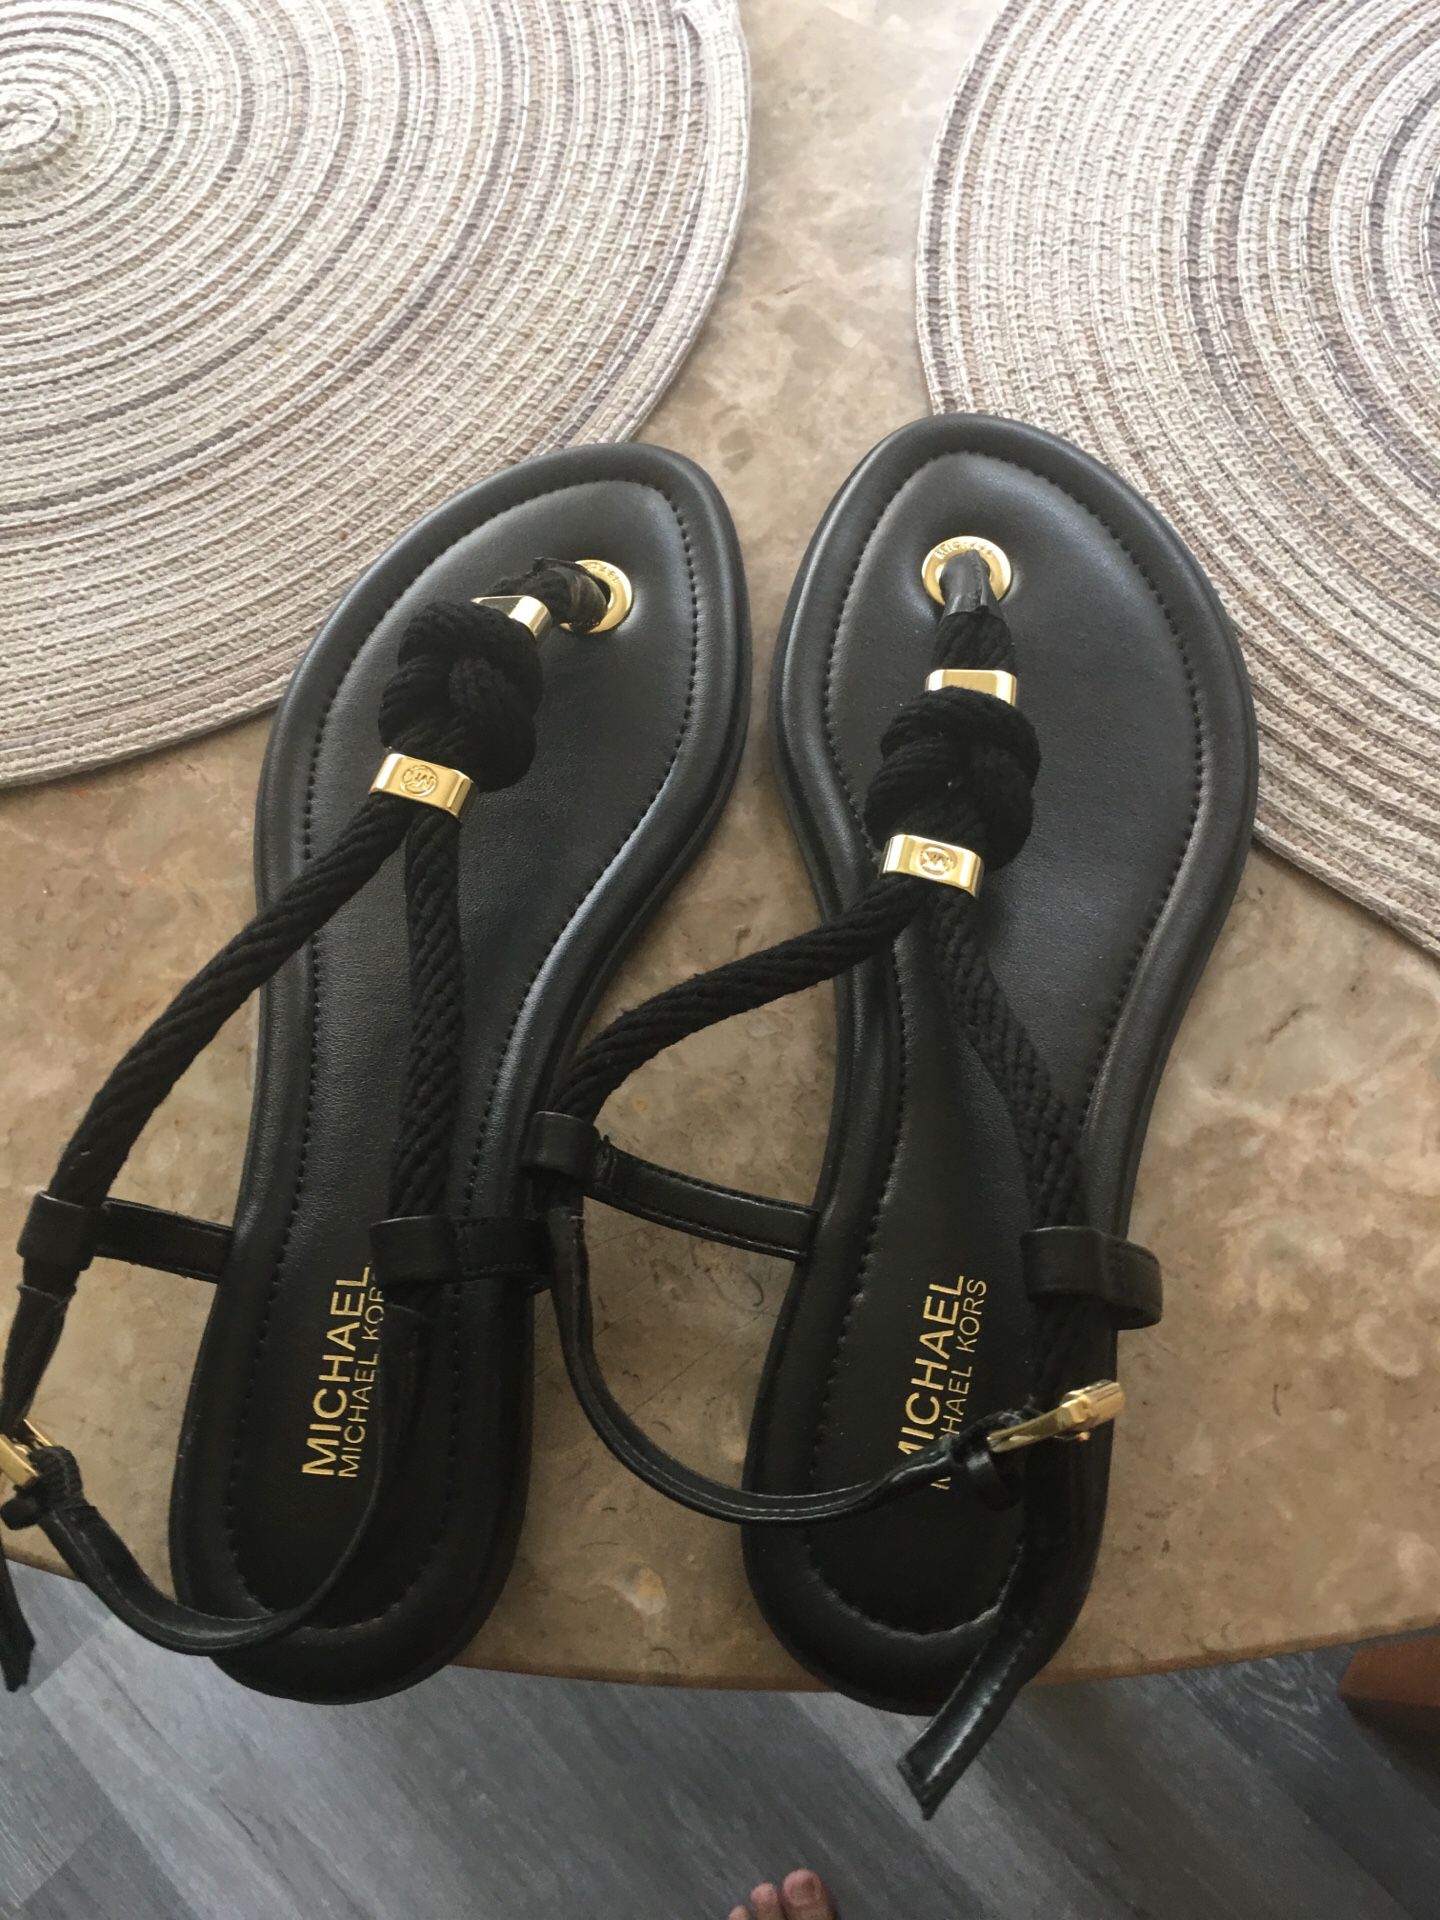 Michael kors sandals size 8